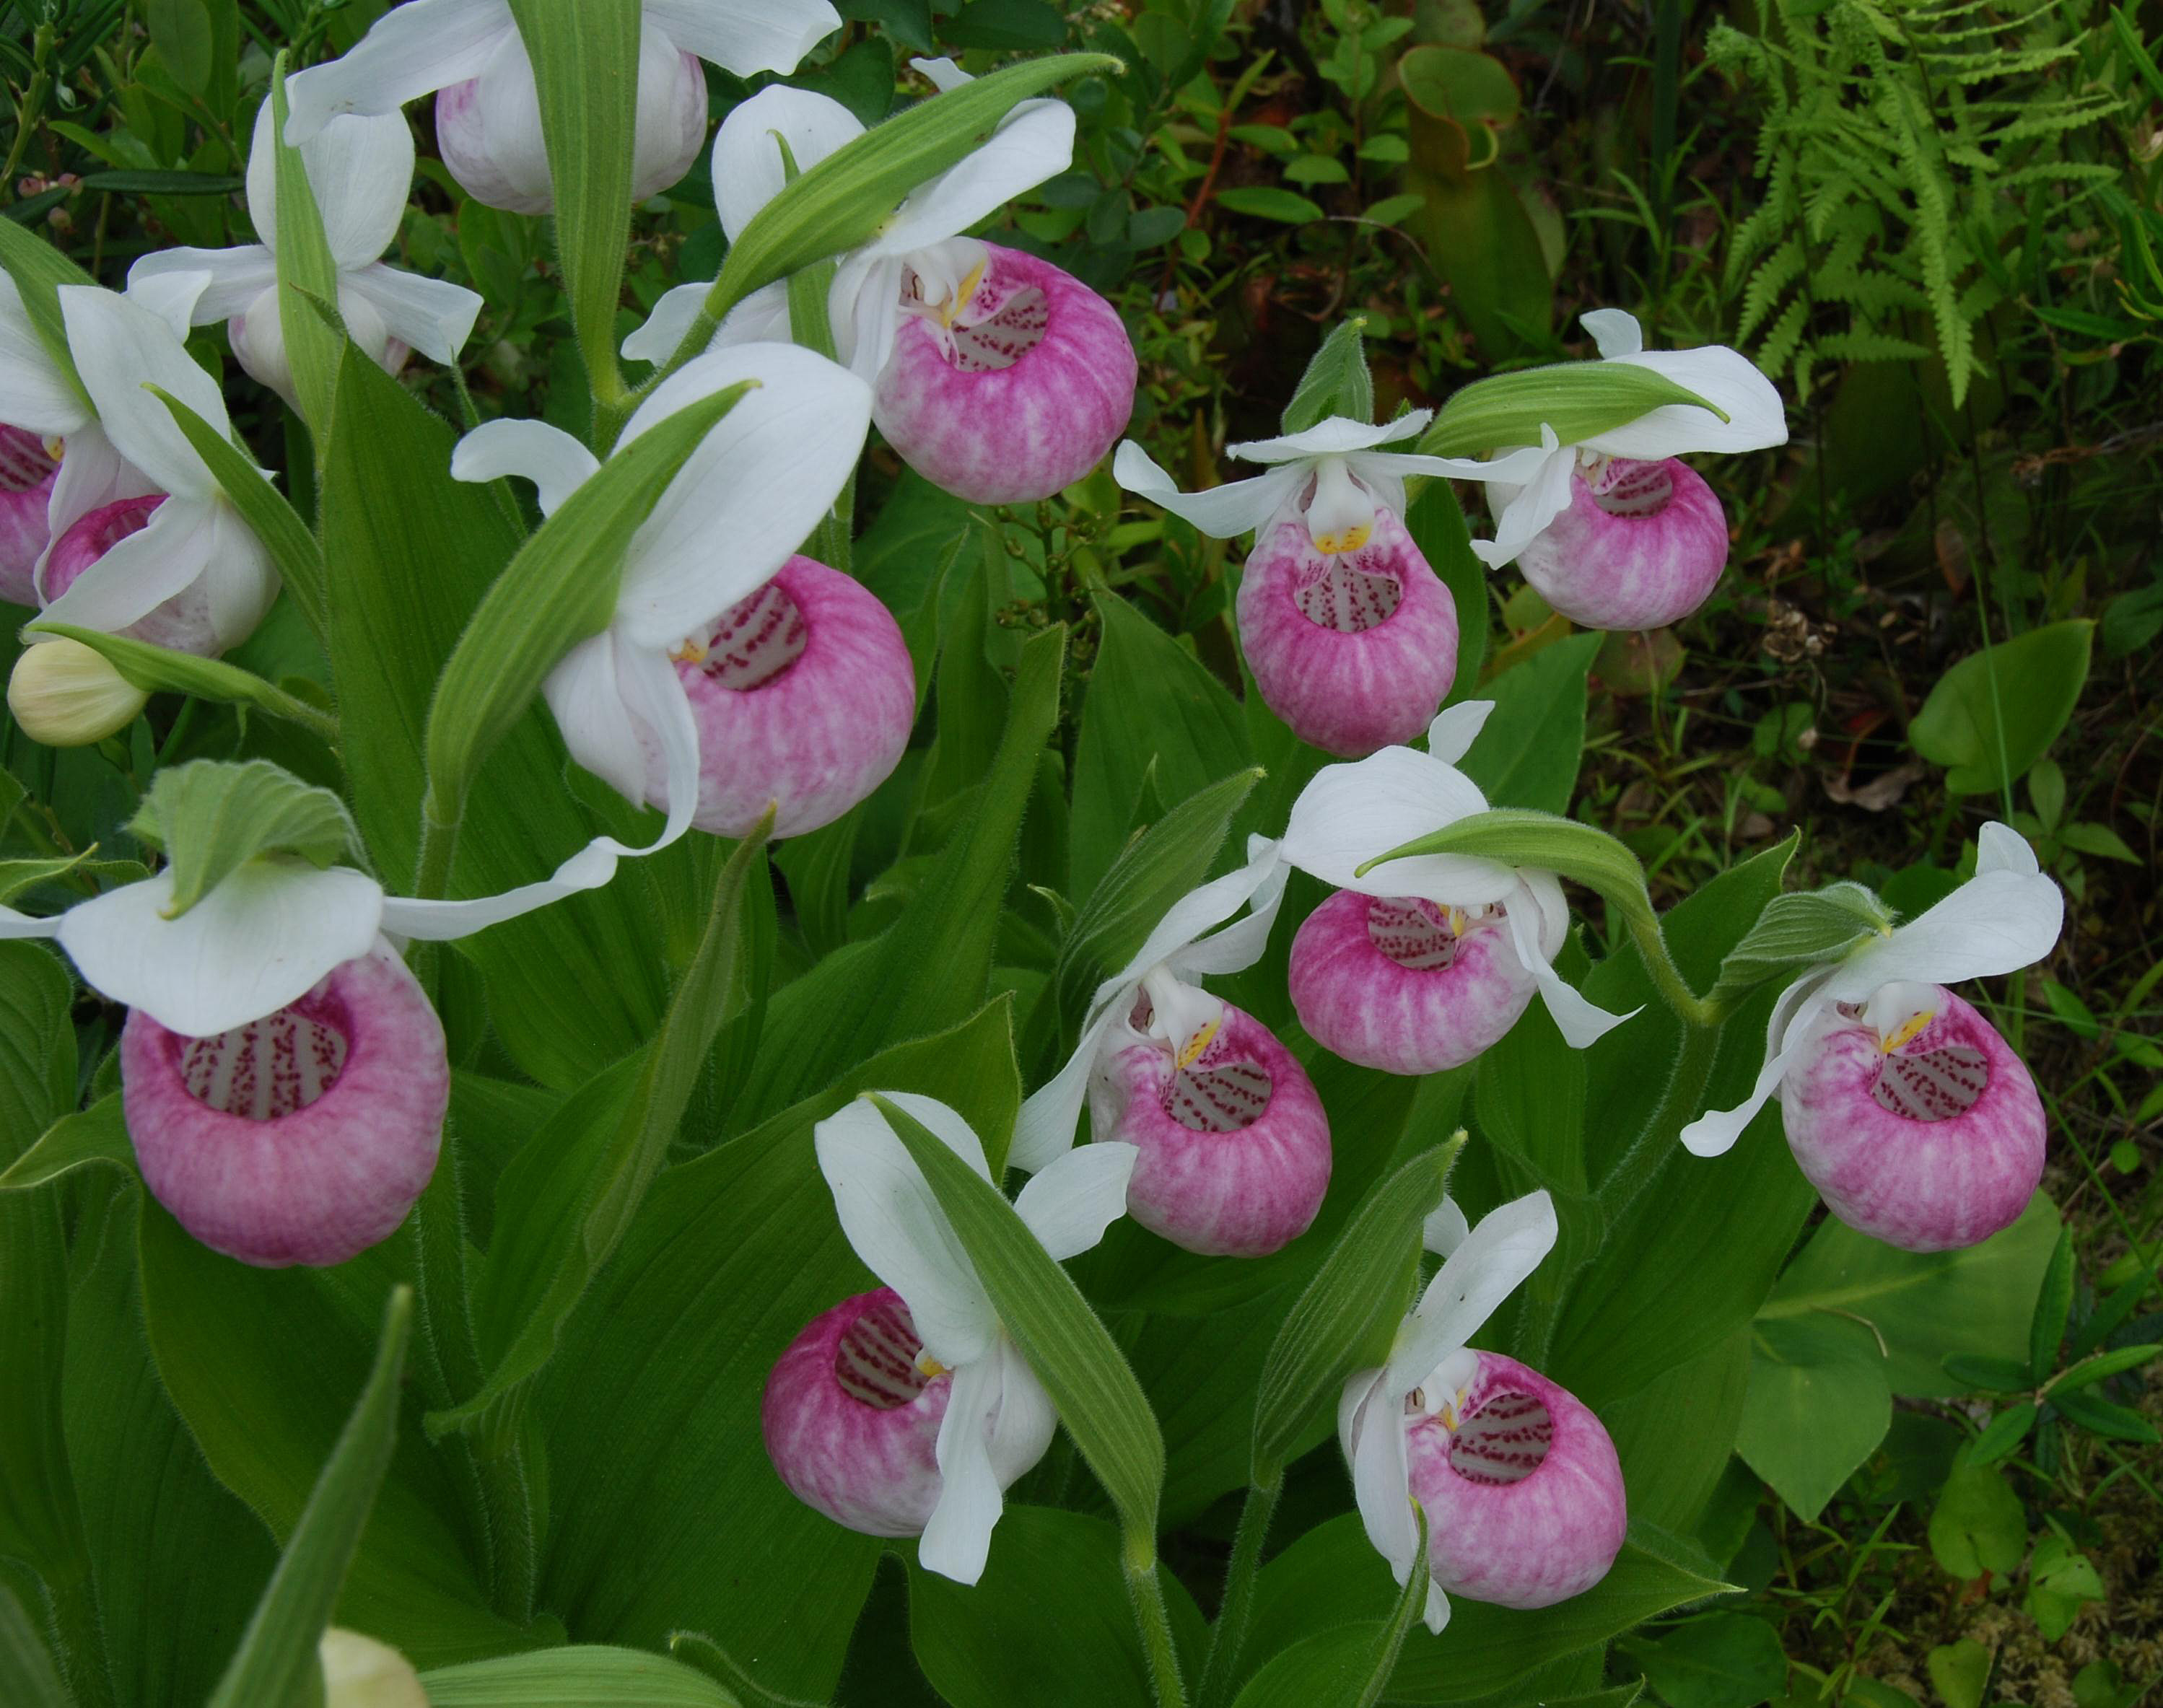 C. reginae - group in flower